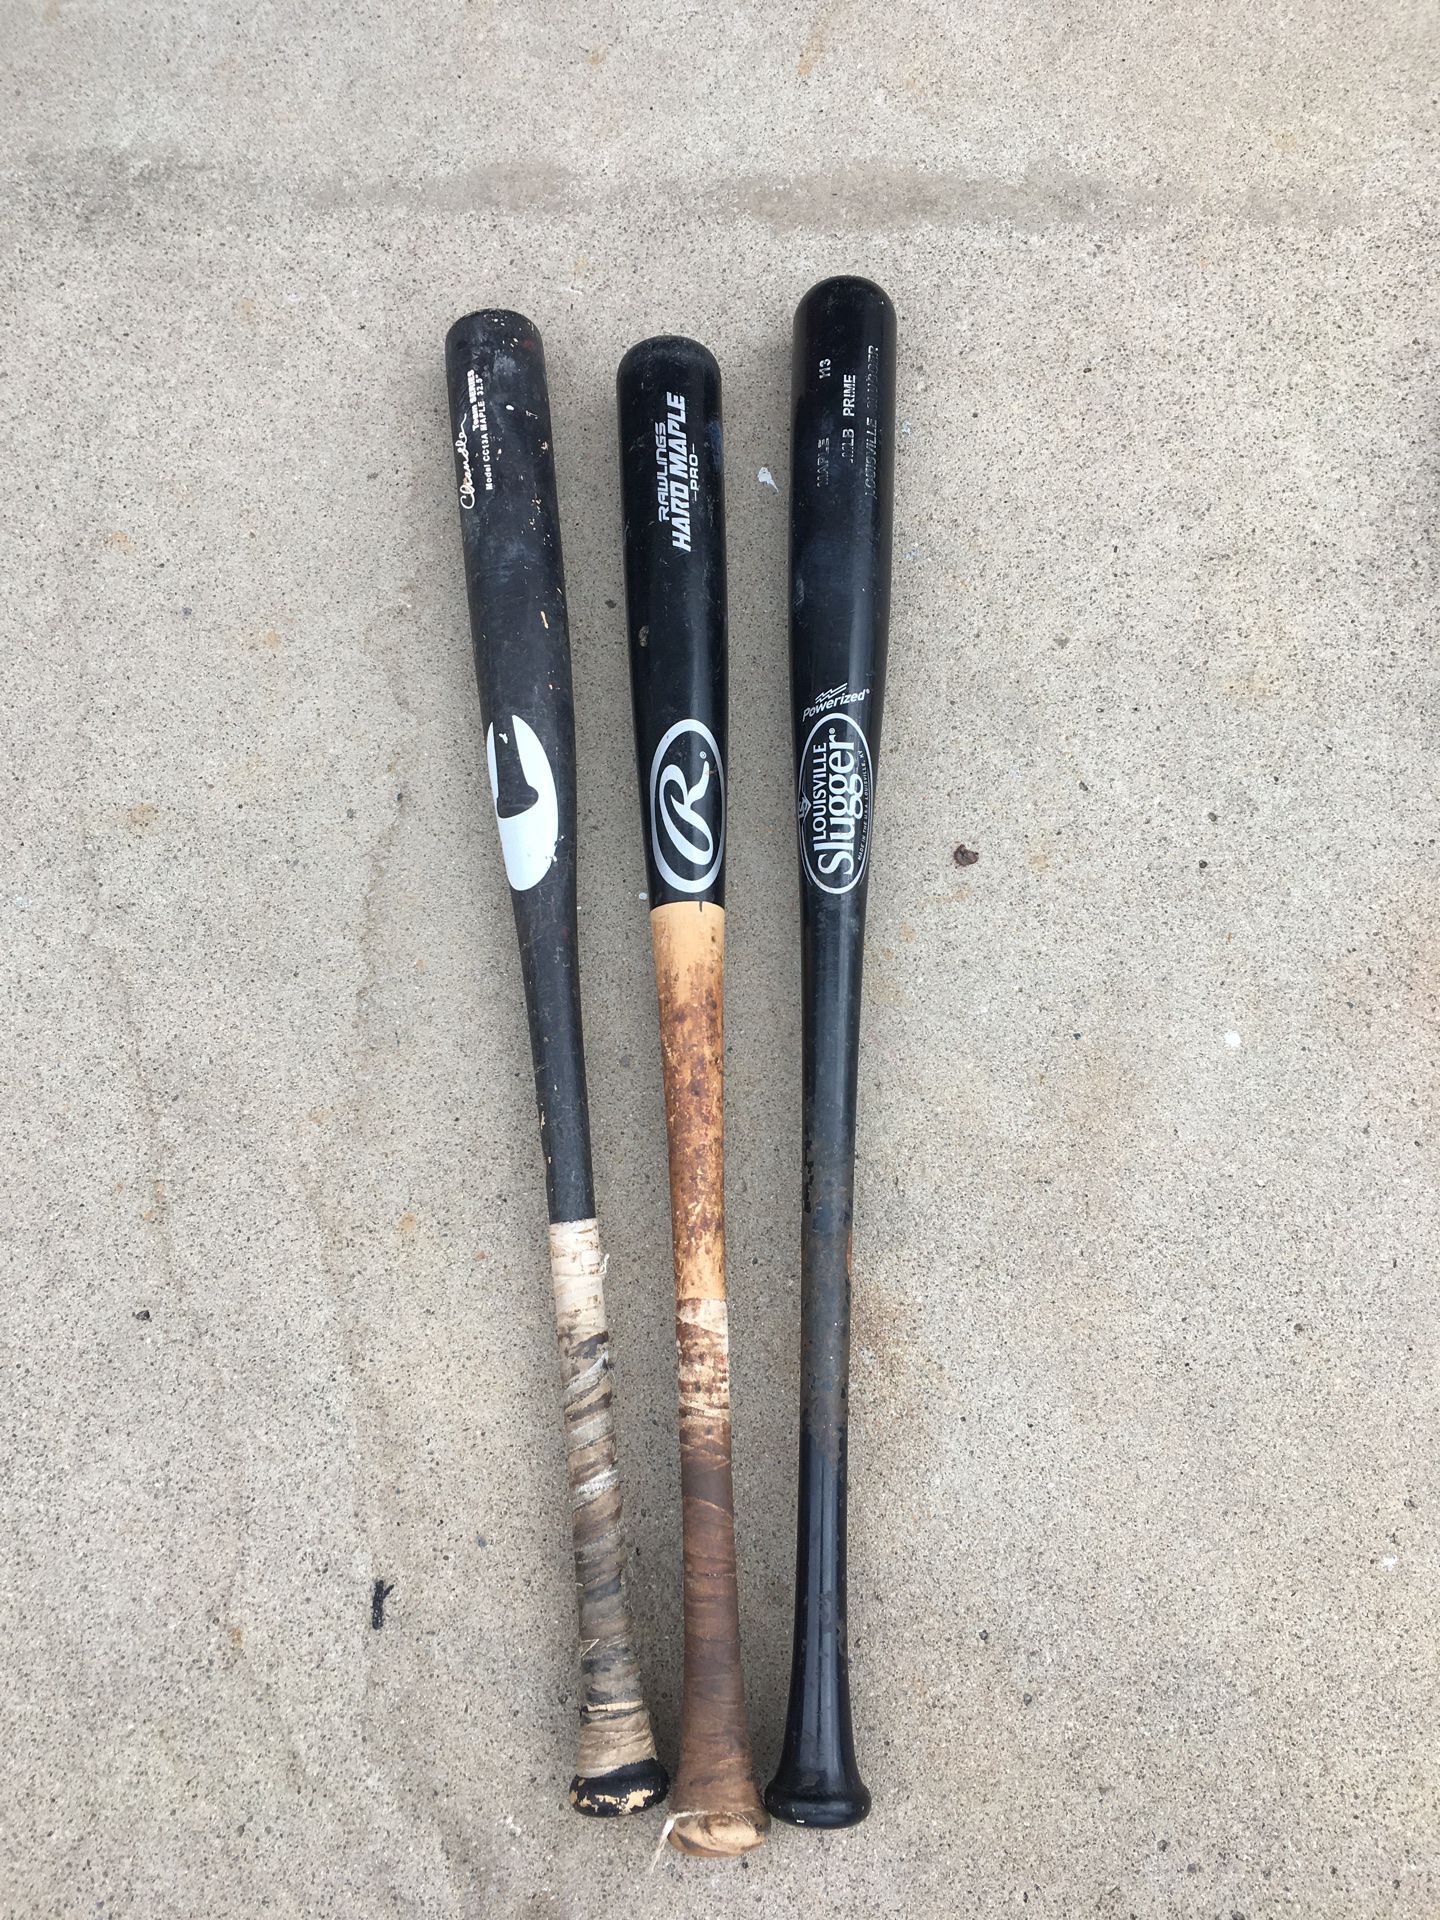 Wood baseball bats